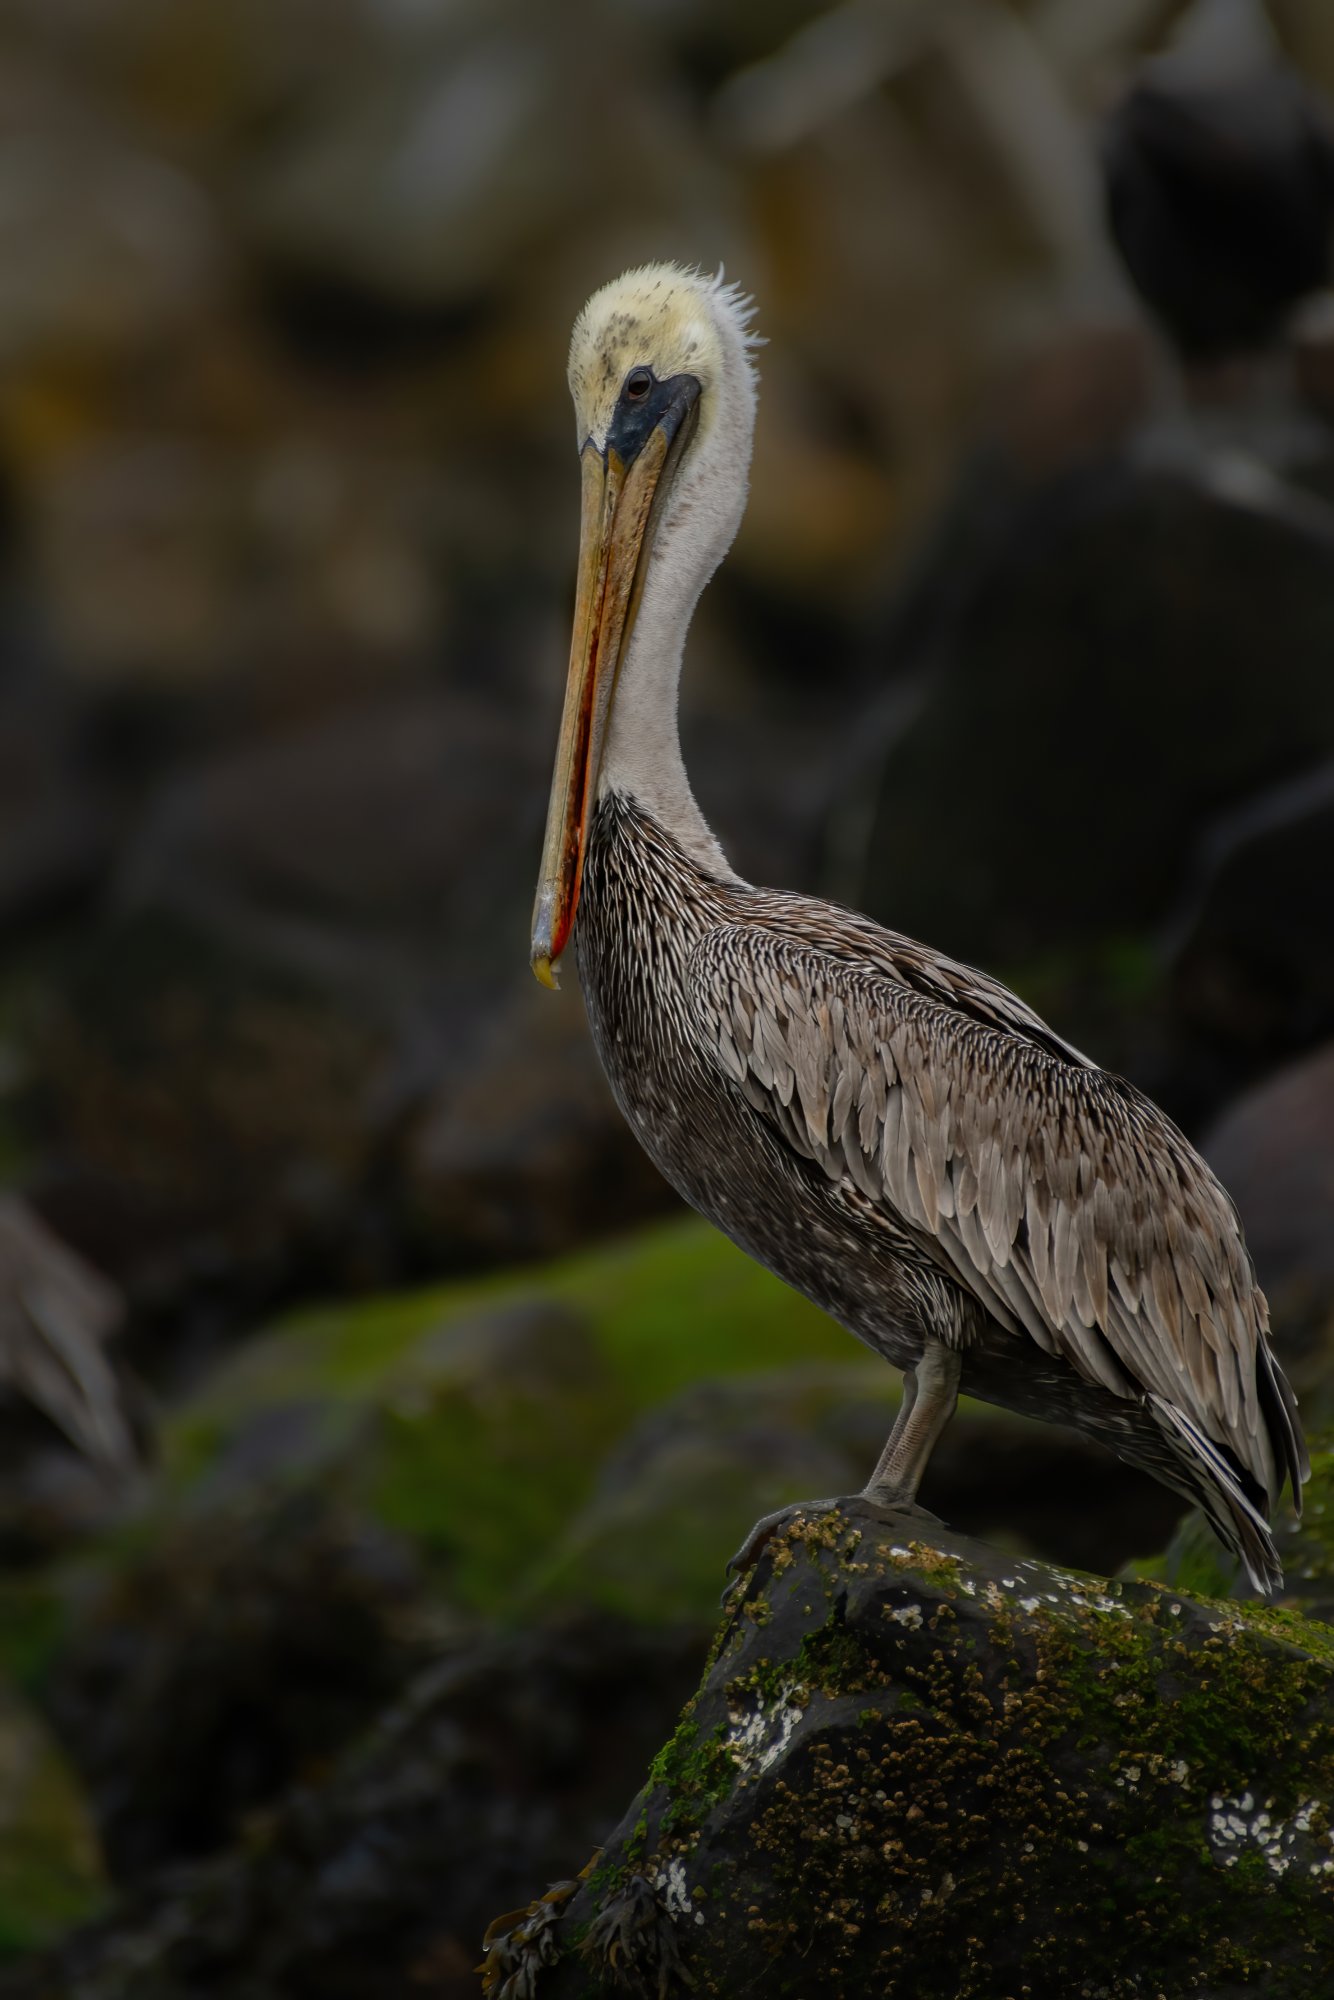 brown pelican.jpg